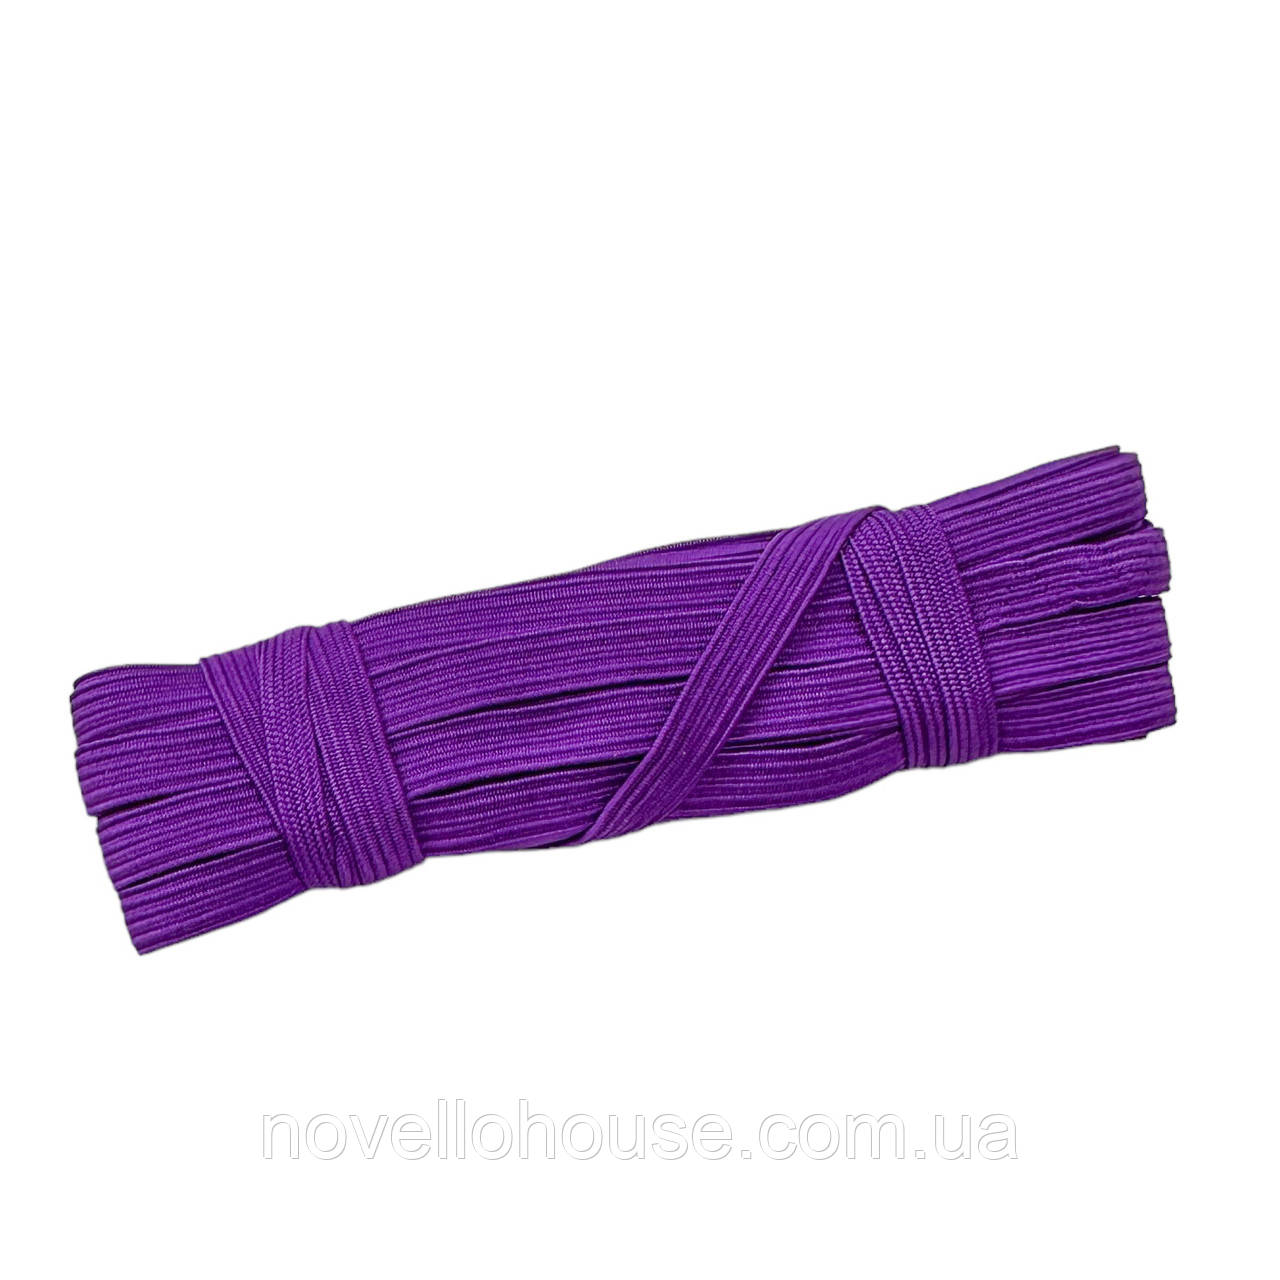 Резинка (гумка) білизняна, Фіолетова, 10 мм. 9-10 метрів, Резинка для шиття плоска.